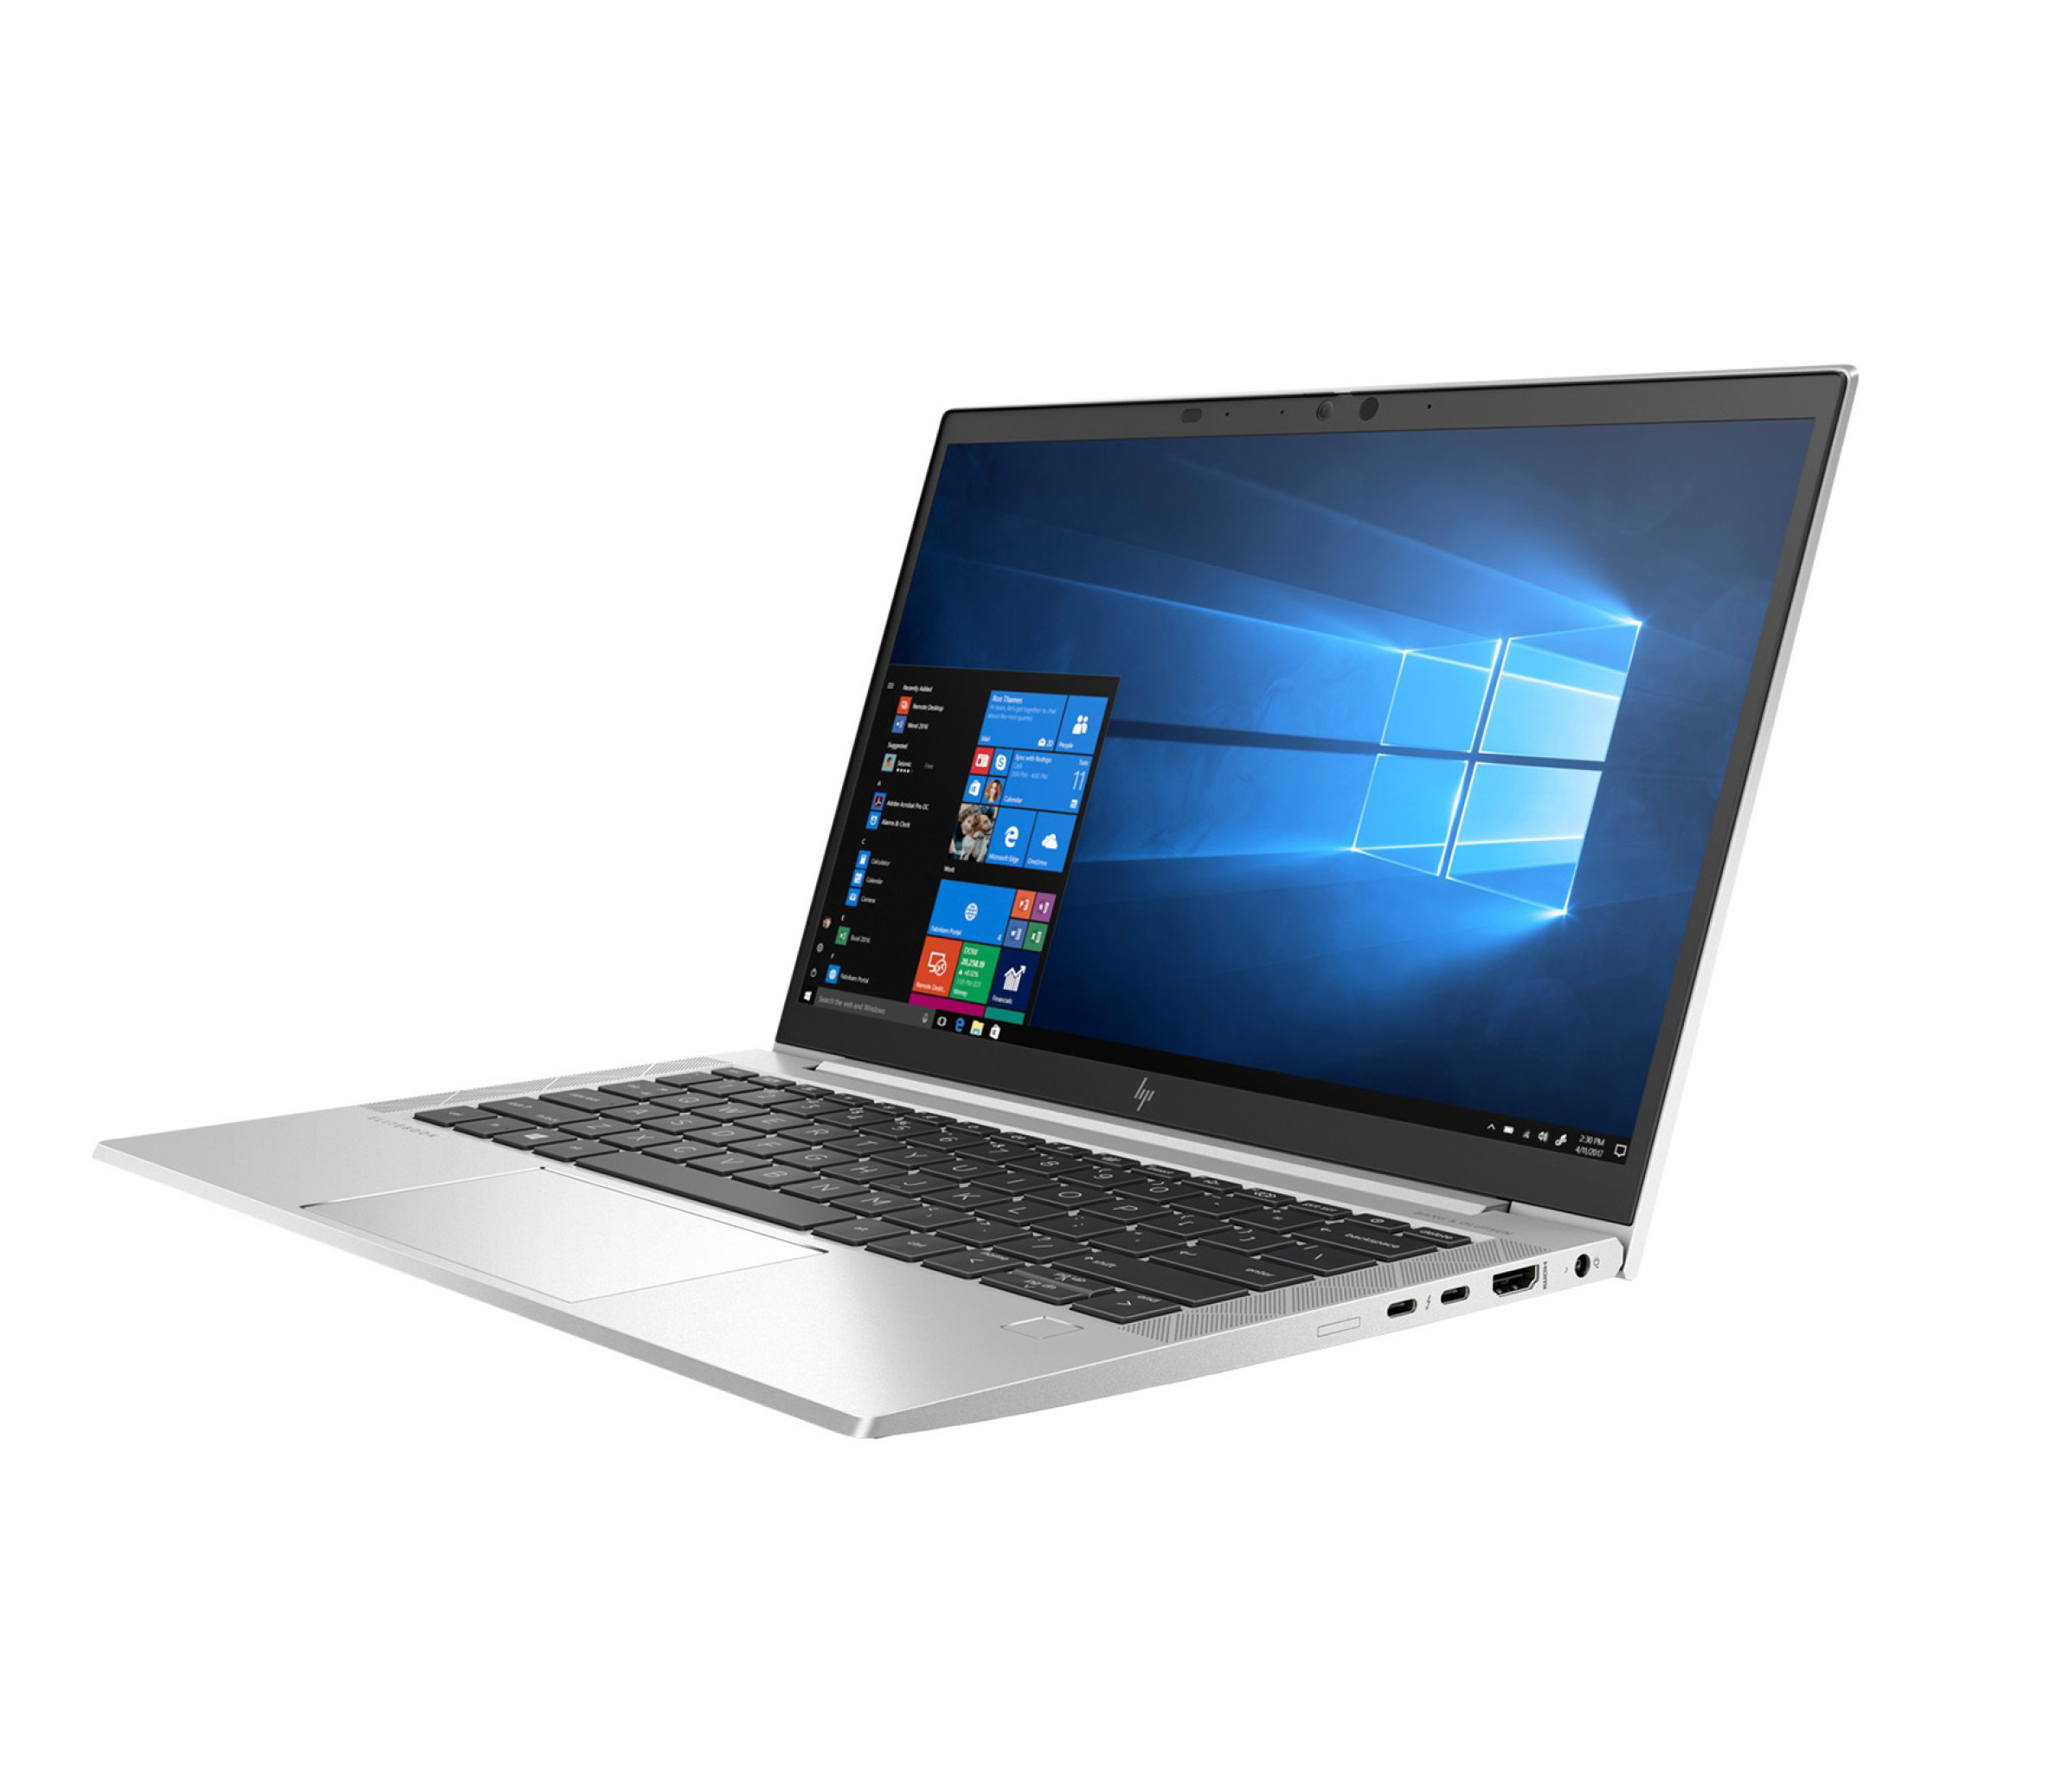  خرید لپ تاپ HP EliteBook 830 G7 | لاکچری لپ تاپ 